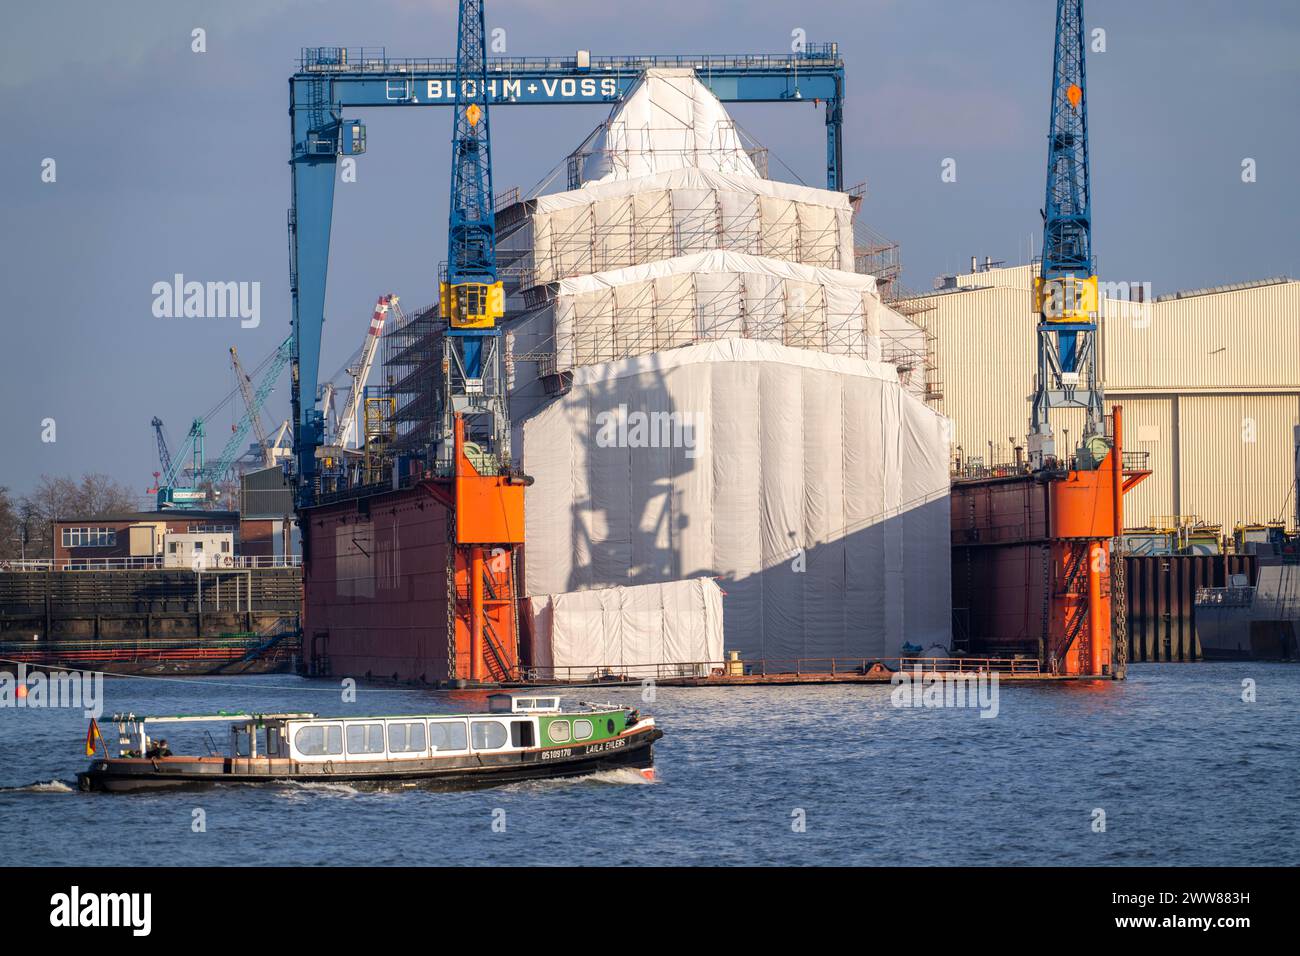 Cantiere navale Blohm + Voss, molo 16, nave con impalcature nel bacino di carenaggio, tour del porto sull'Elba, Amburgo, Germania Foto Stock